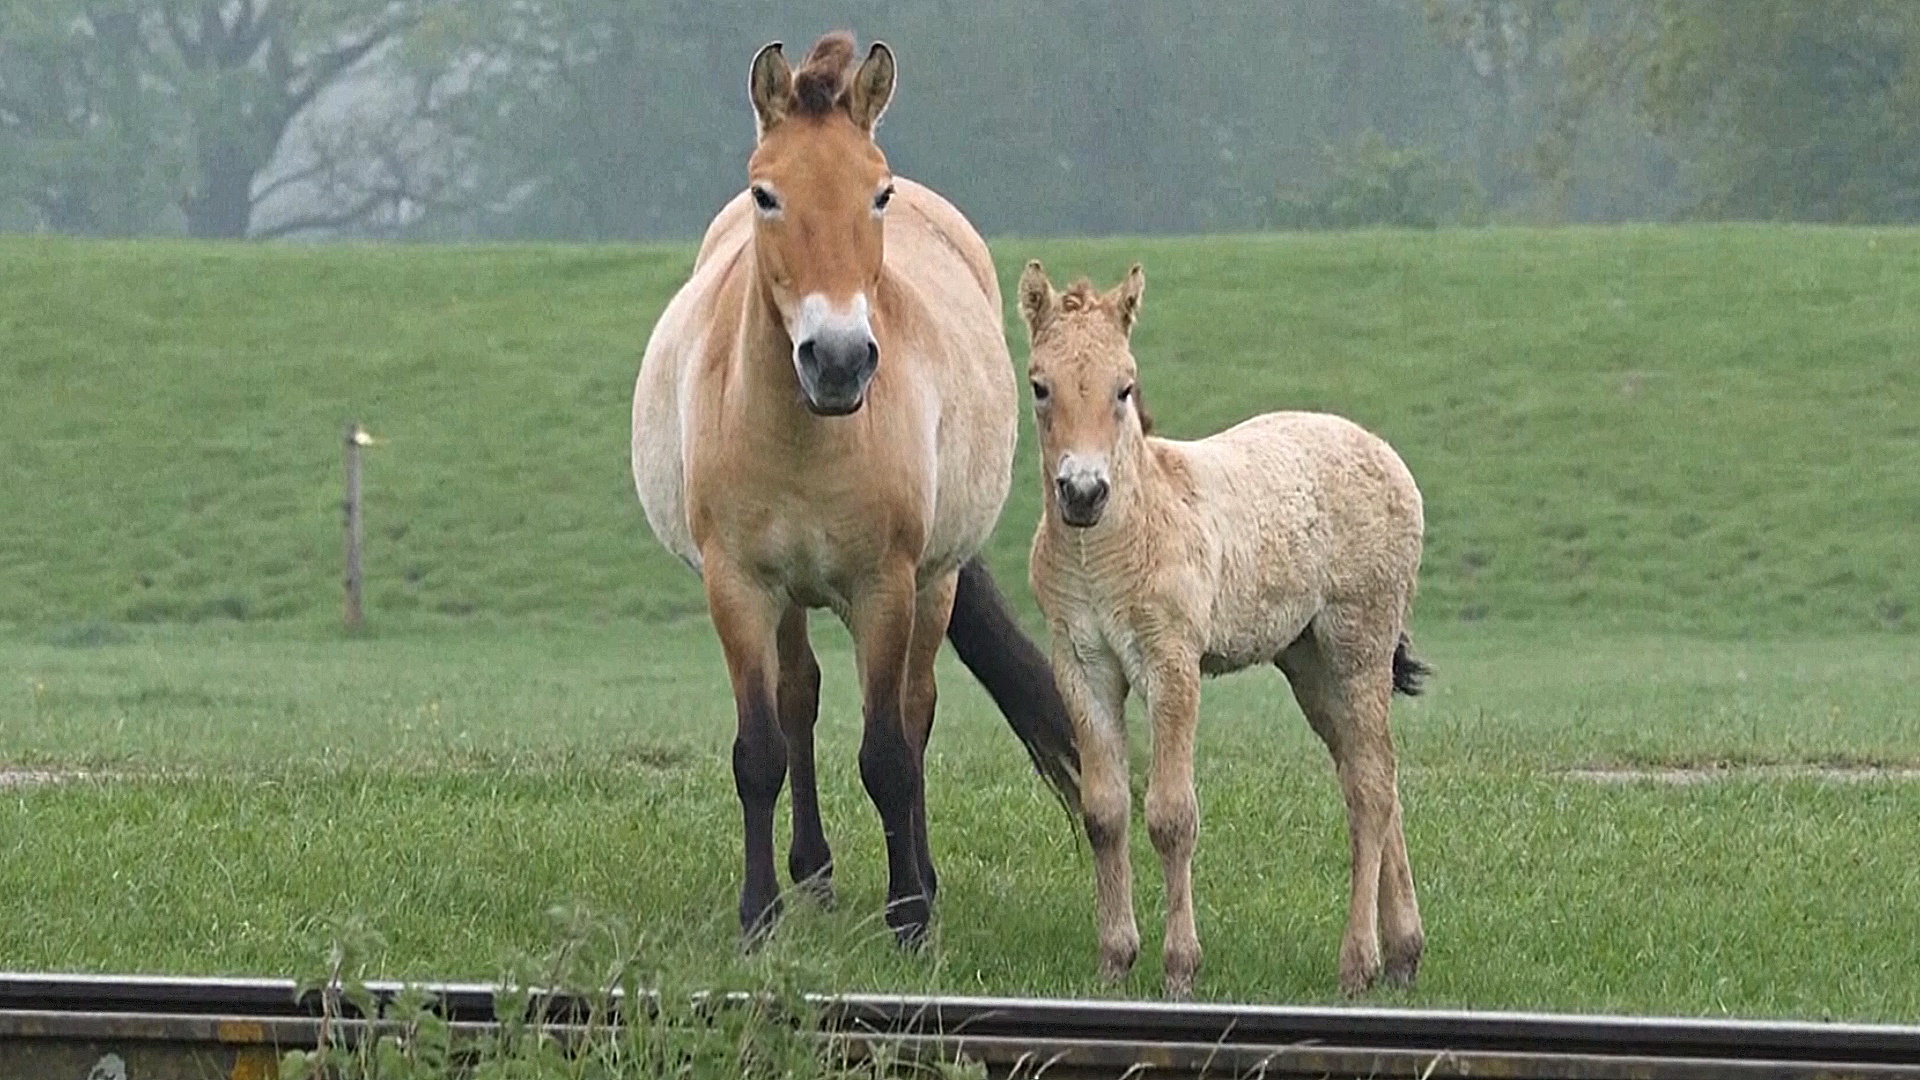 В Великобритании родилось два жеребёнка редкой лошади Пржевальского